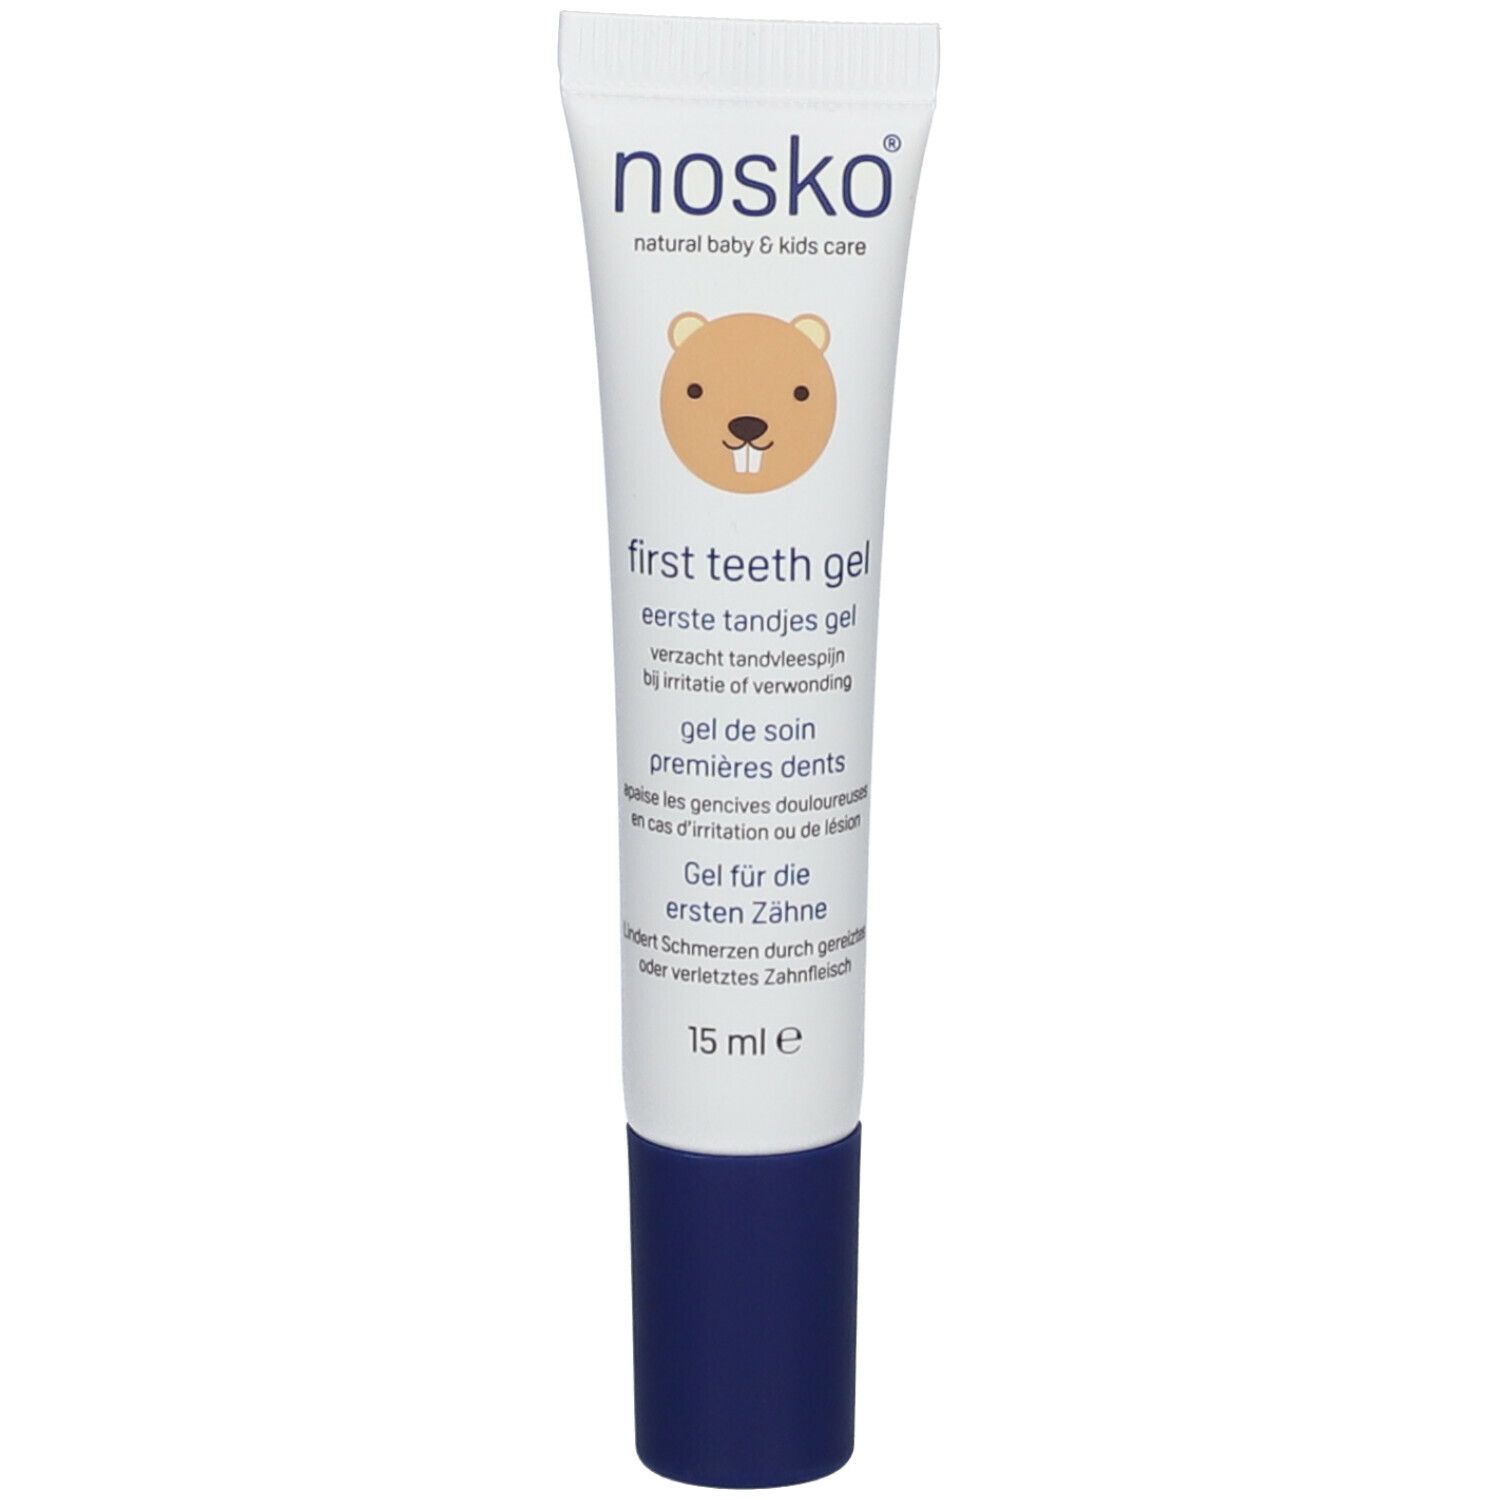 nosko® first teeth gel